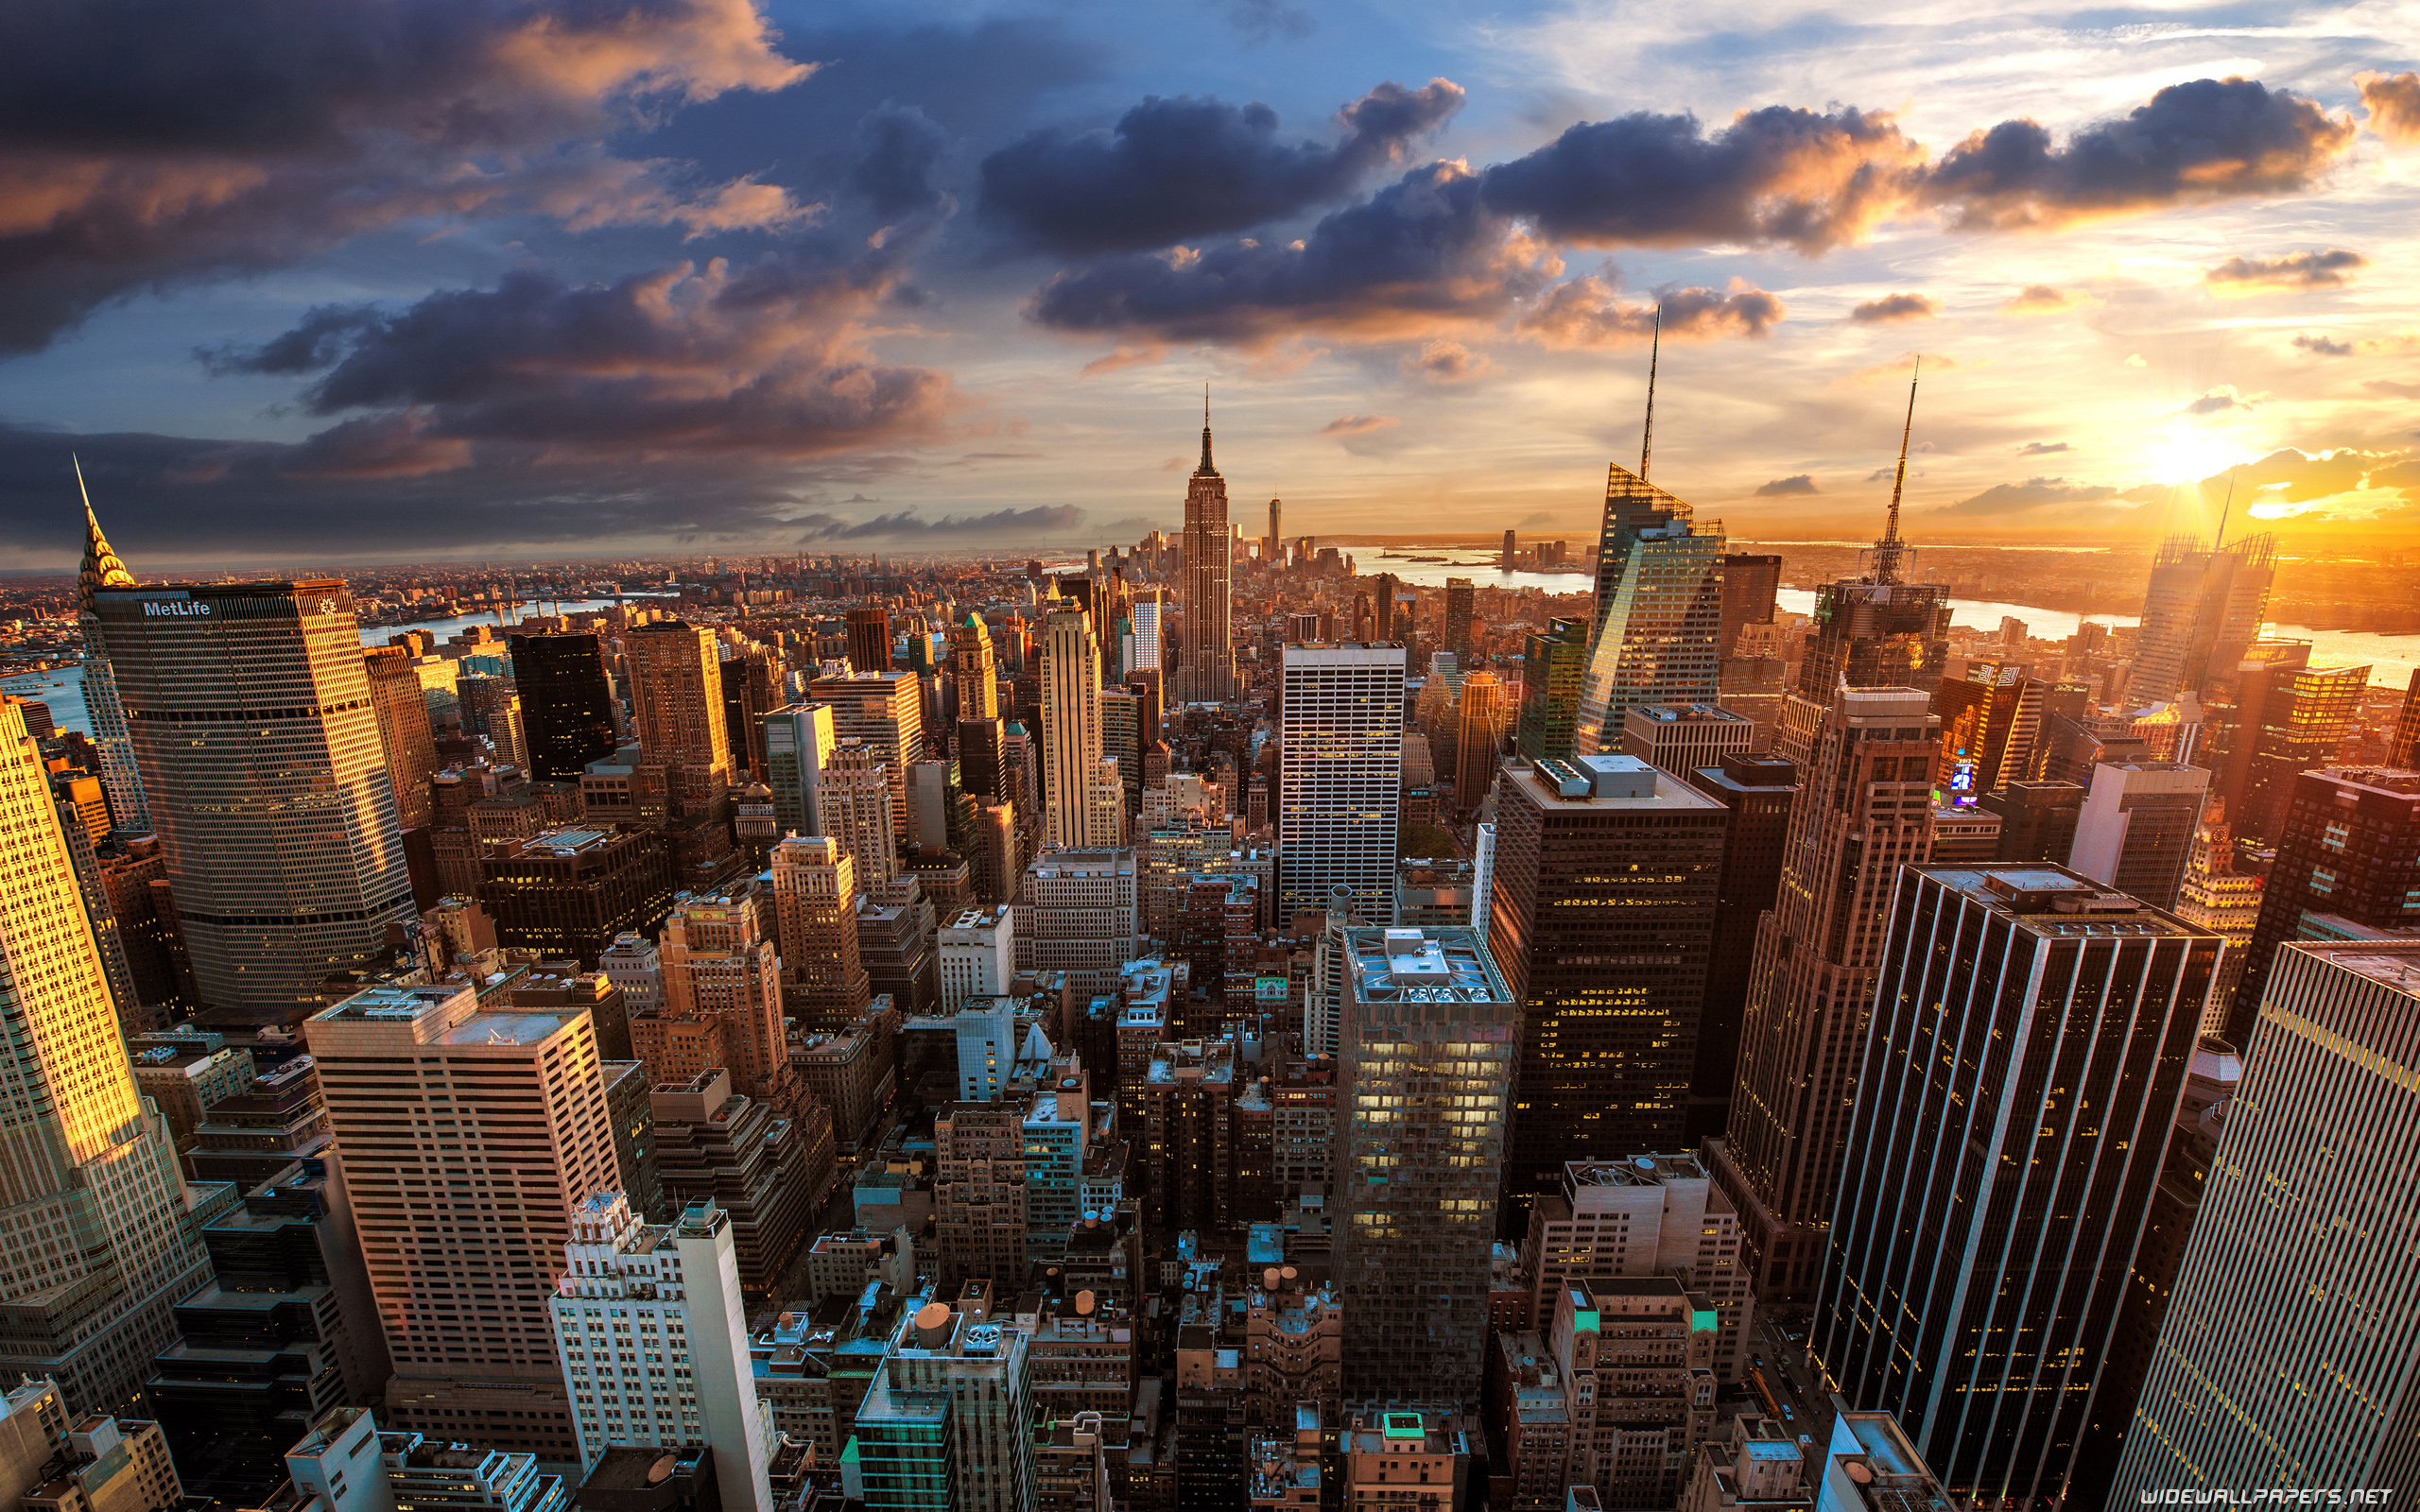 New York có thể được coi là thành phố tuyệt vời nhất thế giới, và hình ảnh đô thị 4K Ultra HD này sẽ giúp bạn cảm nhận được những gì này. Từ những tòa nhà chọc trời đến những con phố đông đúc, bạn sẽ có cảm giác như đang thực sự ở New York và tham gia vào cuộc sống vui nhộn của thành phố này.